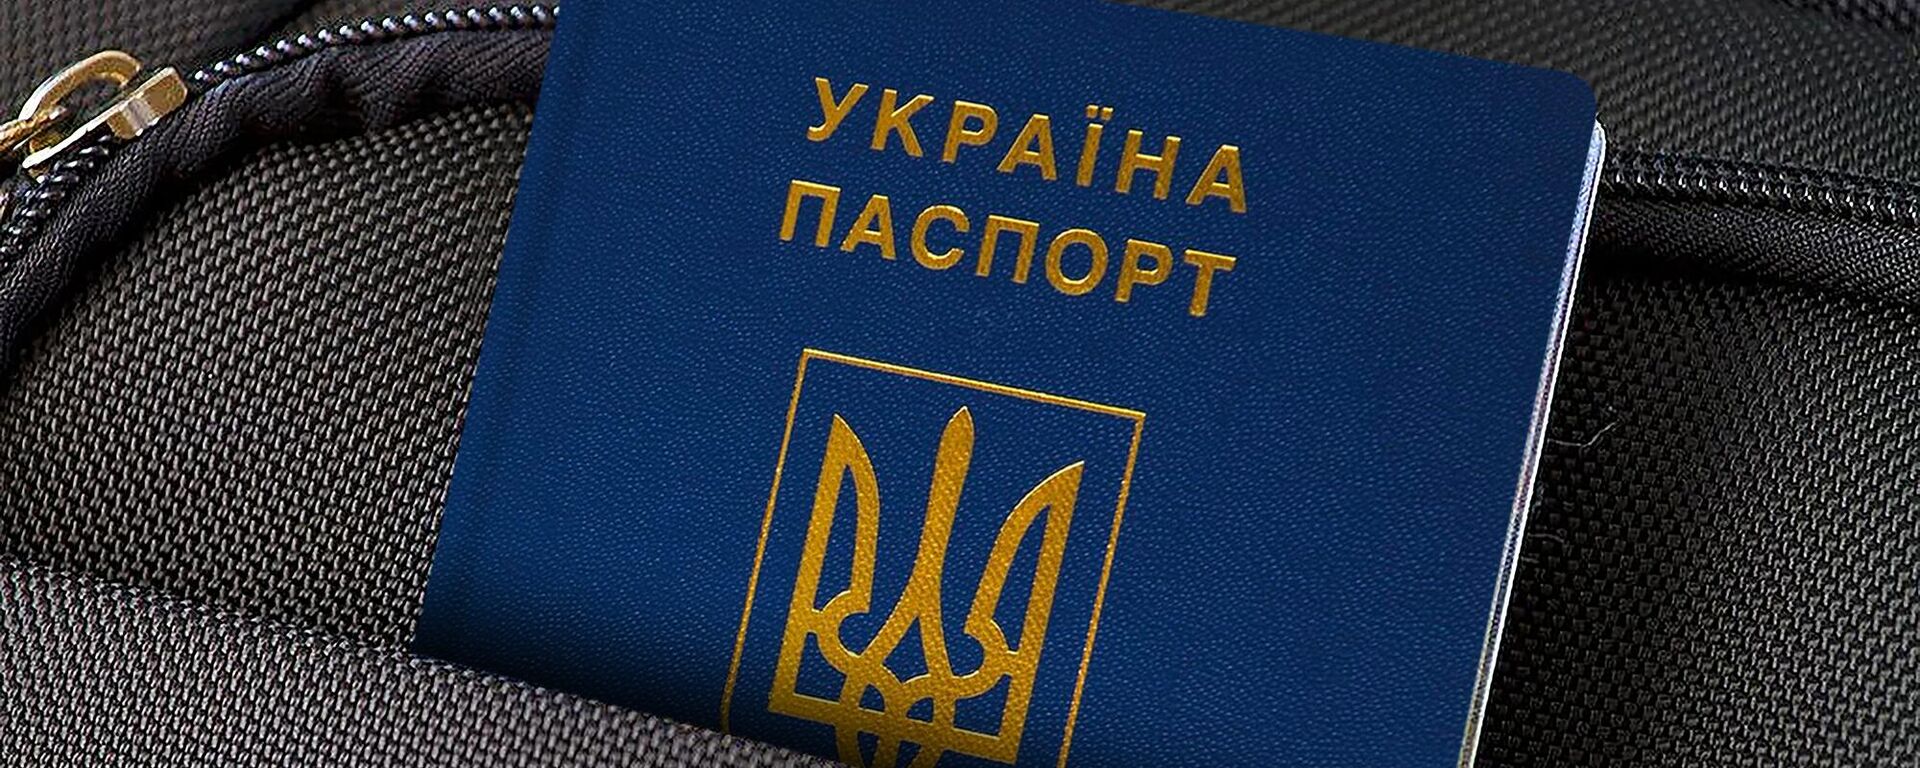 Украинский паспорт, архивное фото - Sputnik Latvija, 1920, 21.04.2022